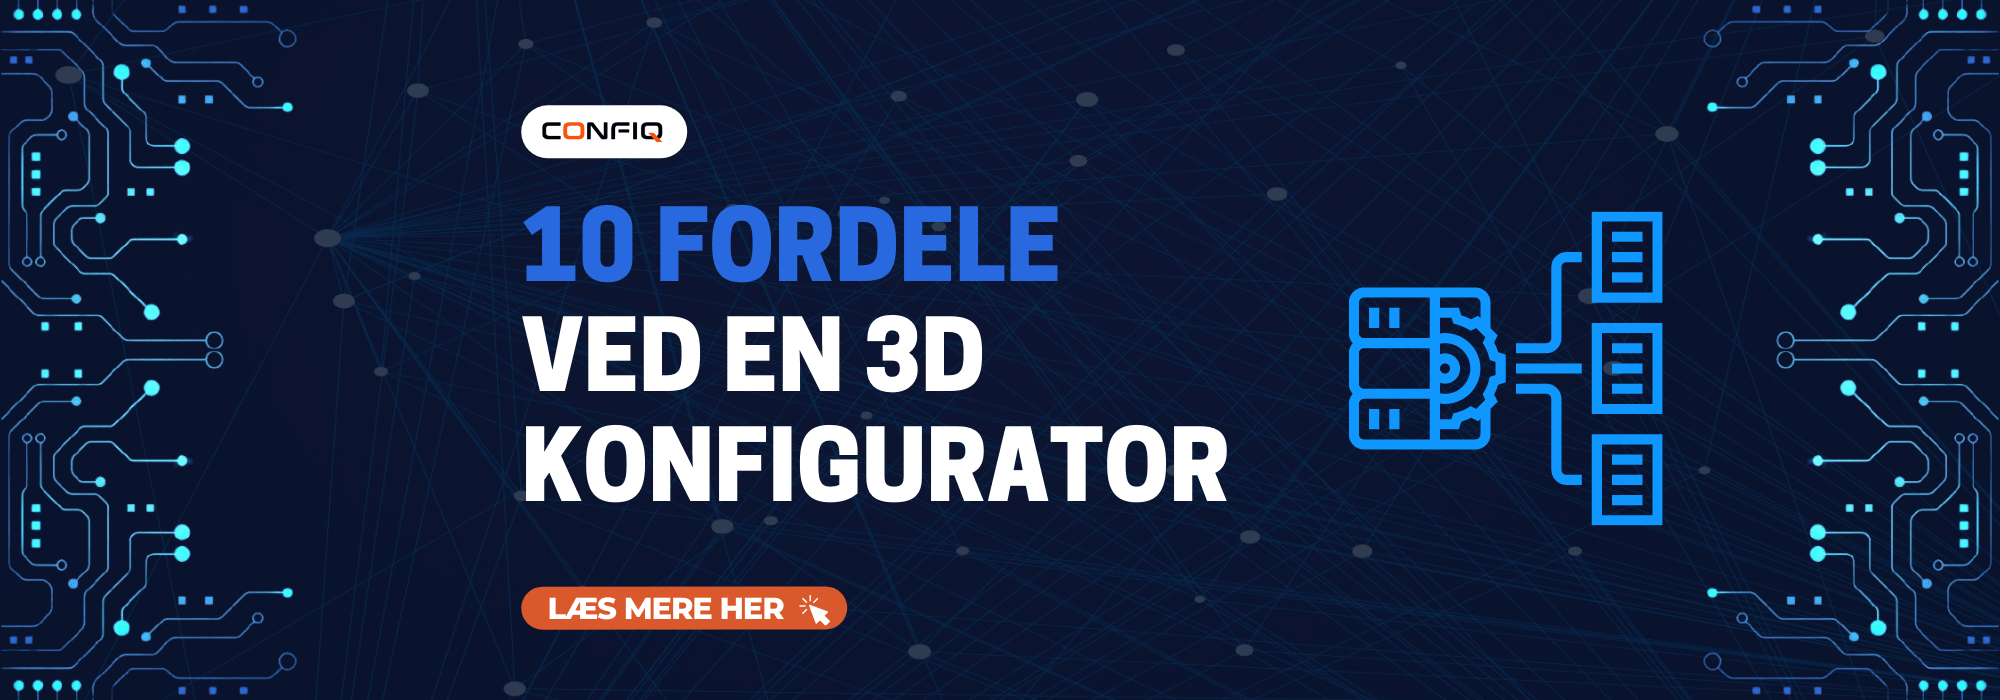 Få 10 fordele ved at opsætte en 3D konfigurator på hjemmesiden. Øg salget og værdien for kunden med det samme